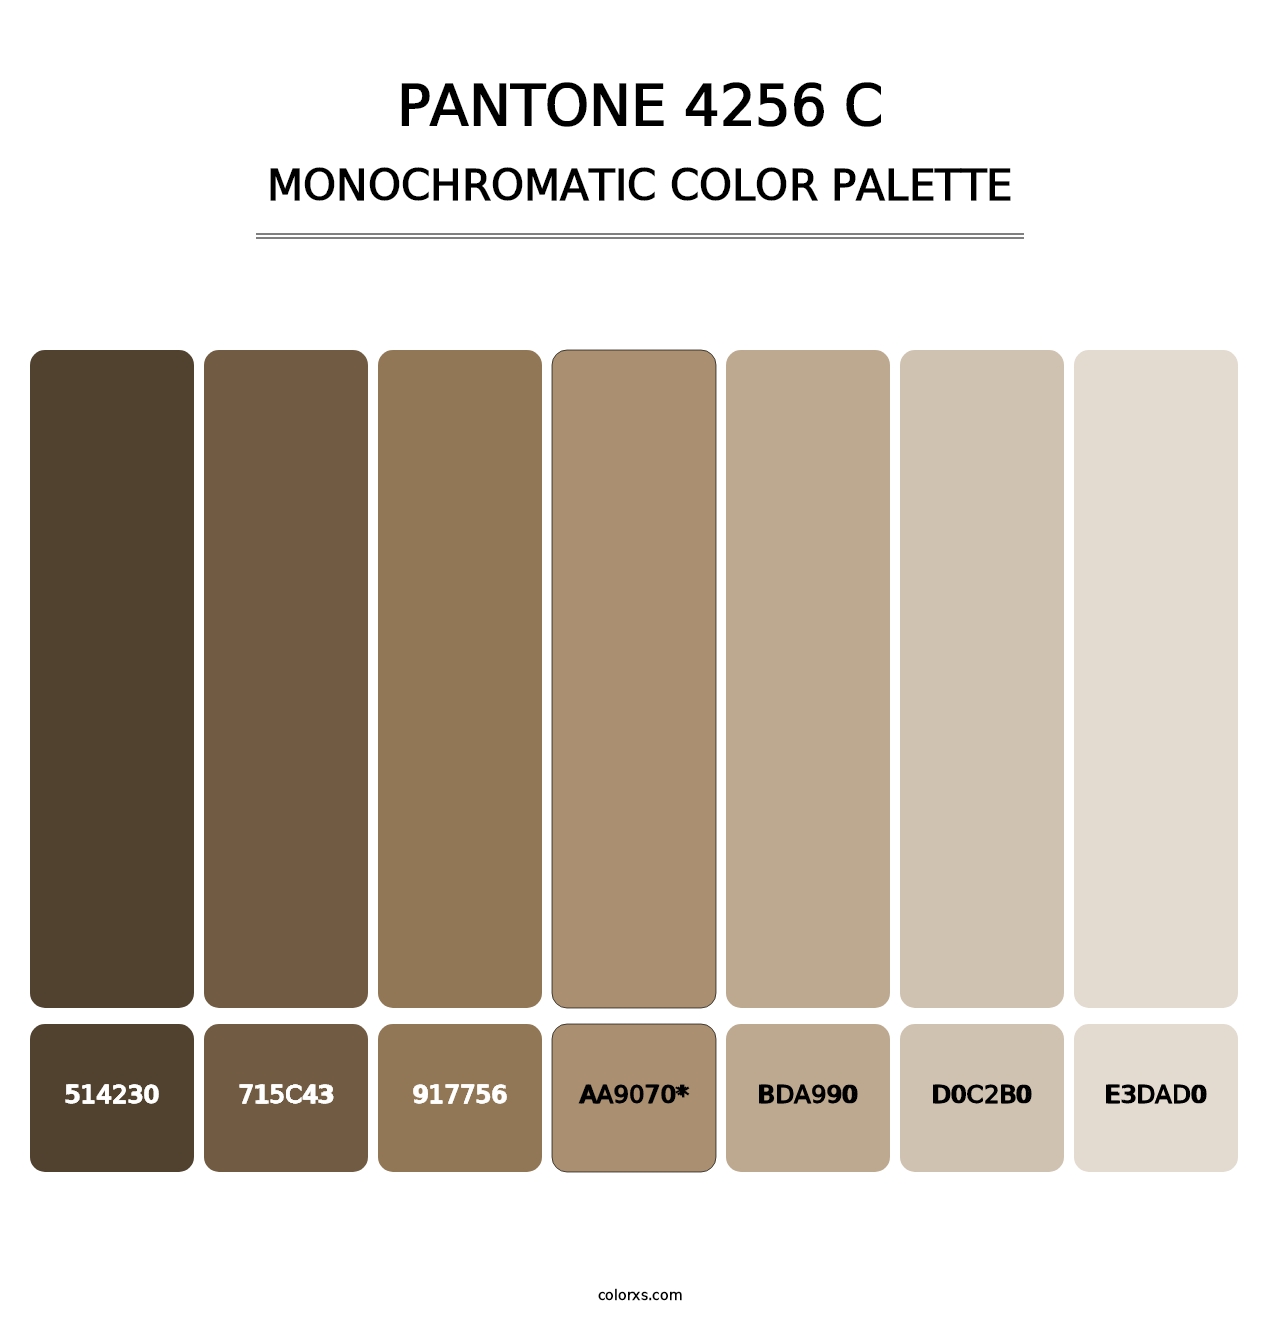 PANTONE 4256 C - Monochromatic Color Palette